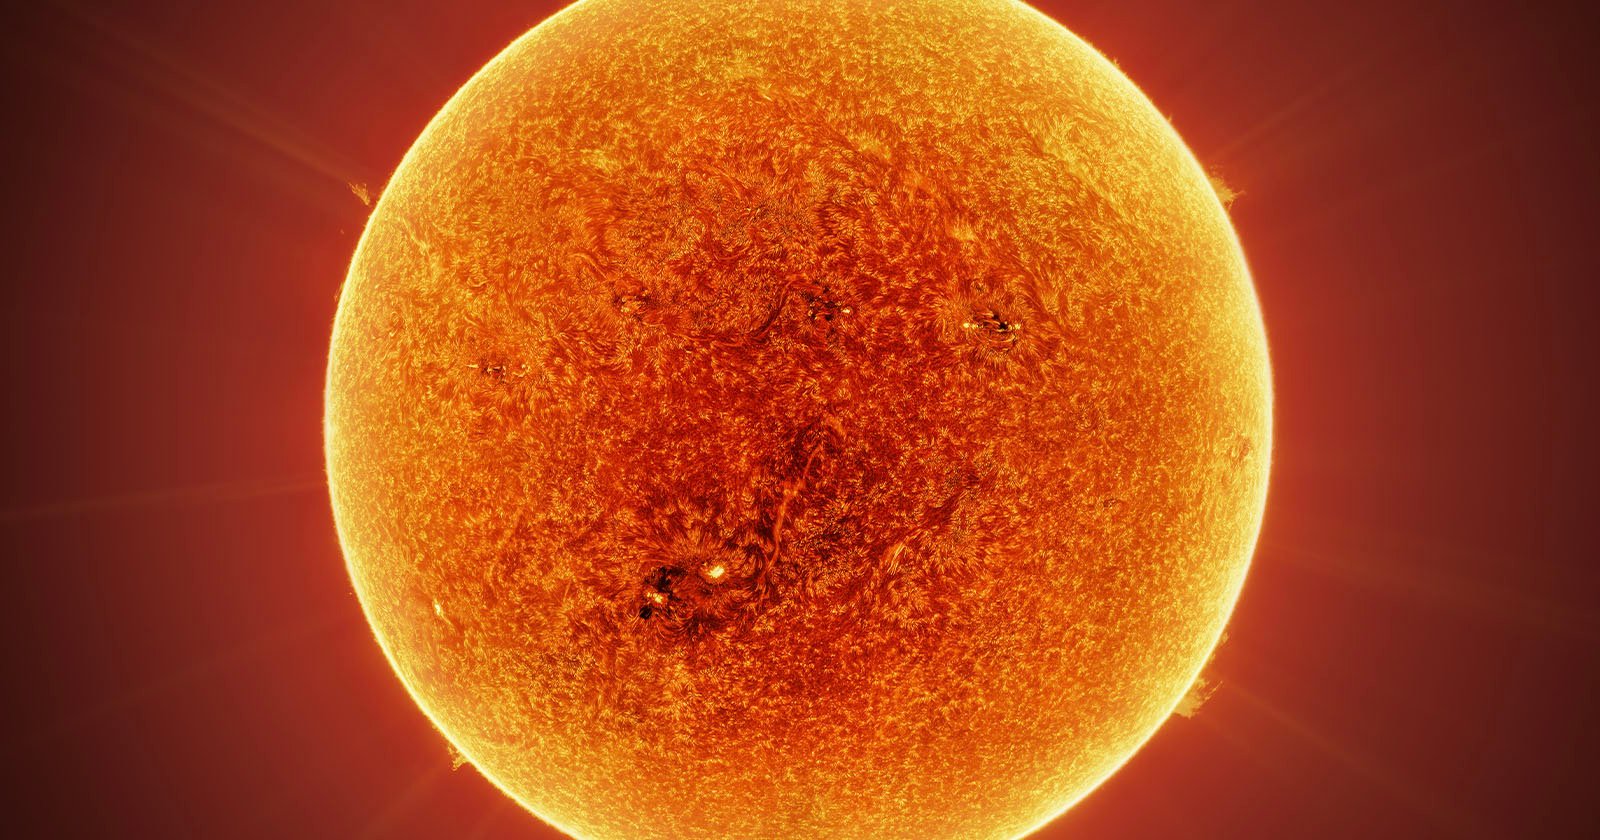 Se publica la imagen del Sol más grande jamás hecha: 400 megapíxeles en una insólita composición de más de 100.000 fotografías